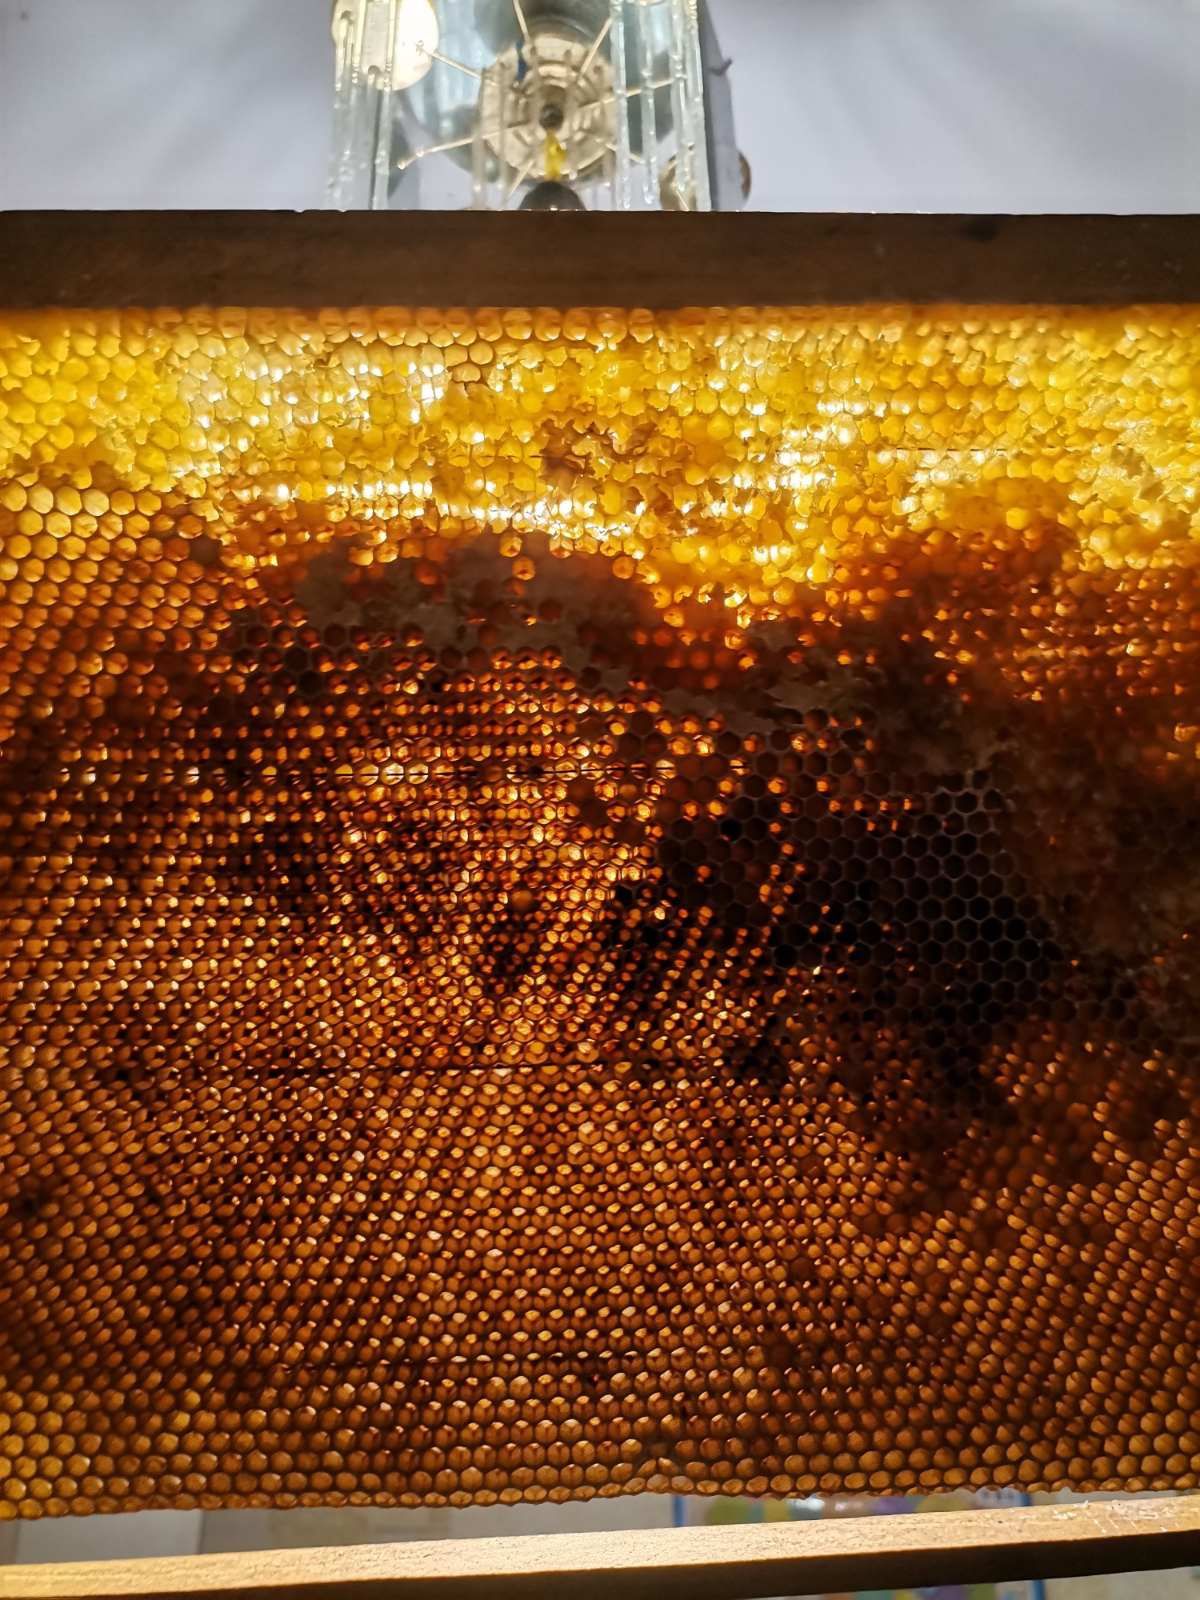 Продам сушь пчелиную